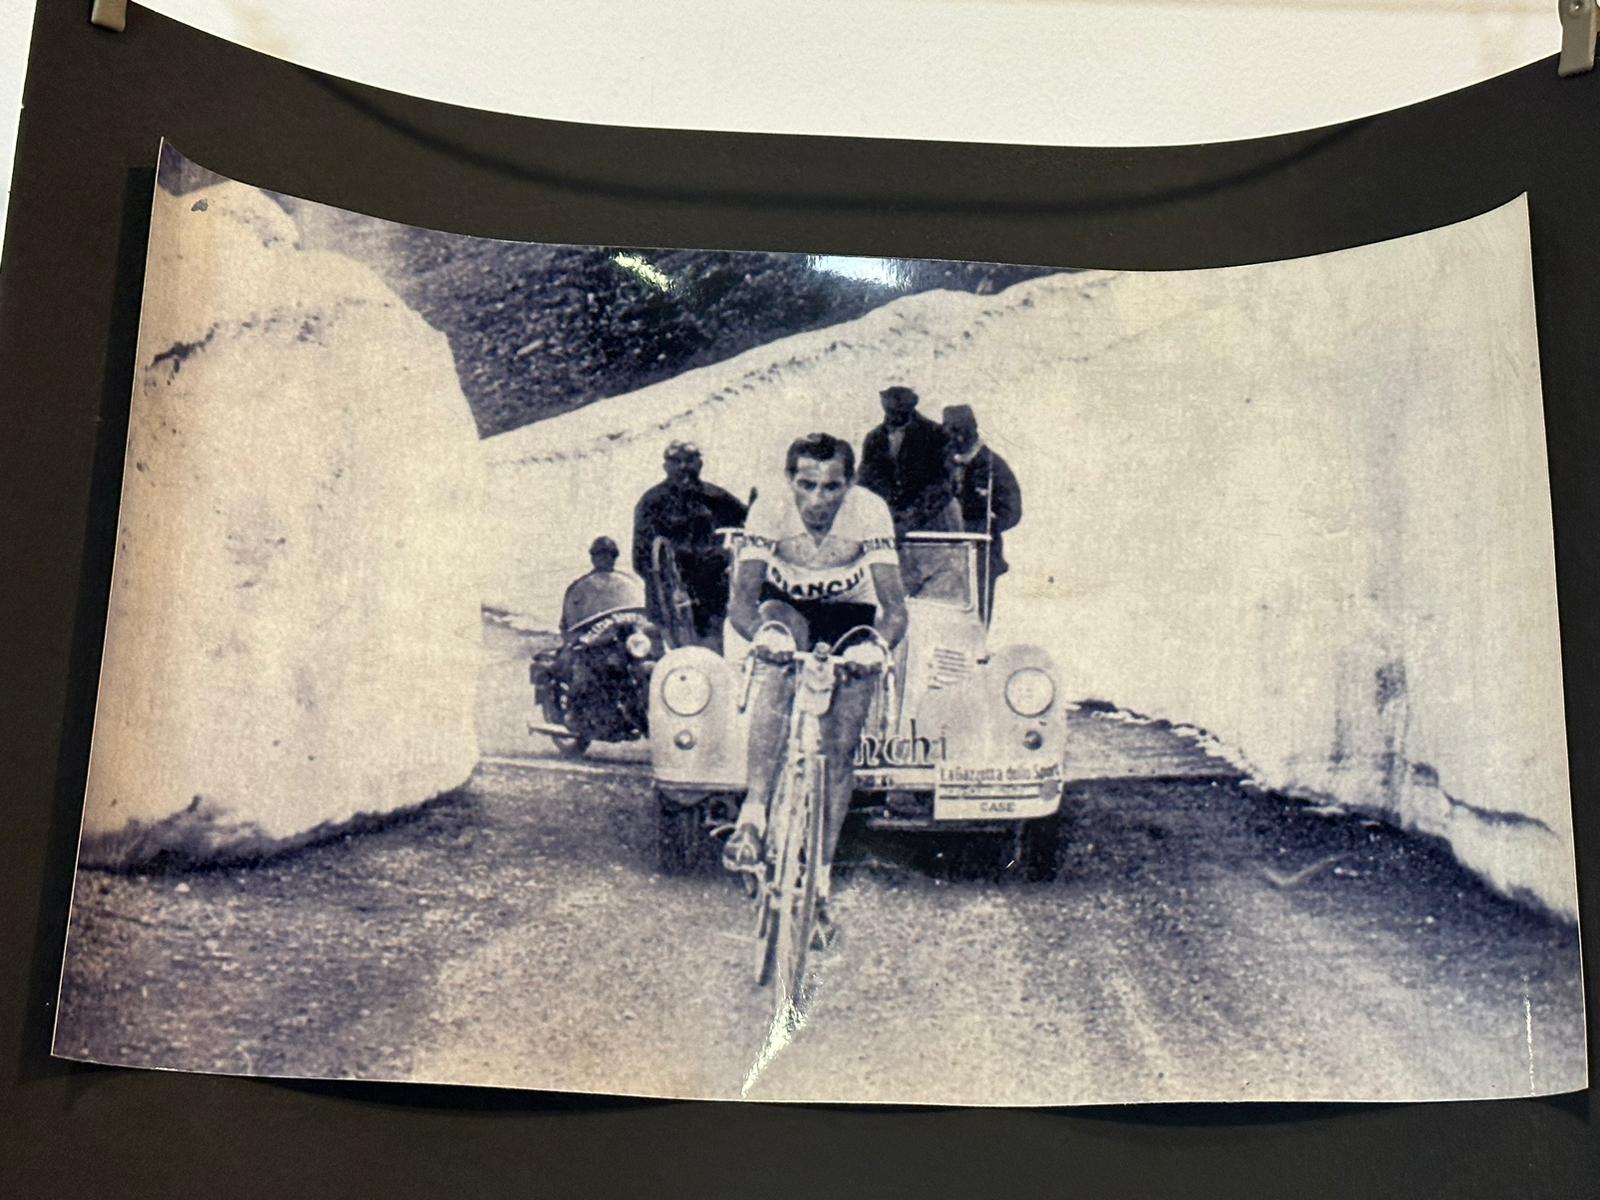 Gli operatori della Stradale, durante una pausa del Giro d’Italia, hanno visitato il Museo dei Campionissimi, dedicato ai ciclisti Fausto Coppi e Costante Girardengo, a Novi Ligure (AL).